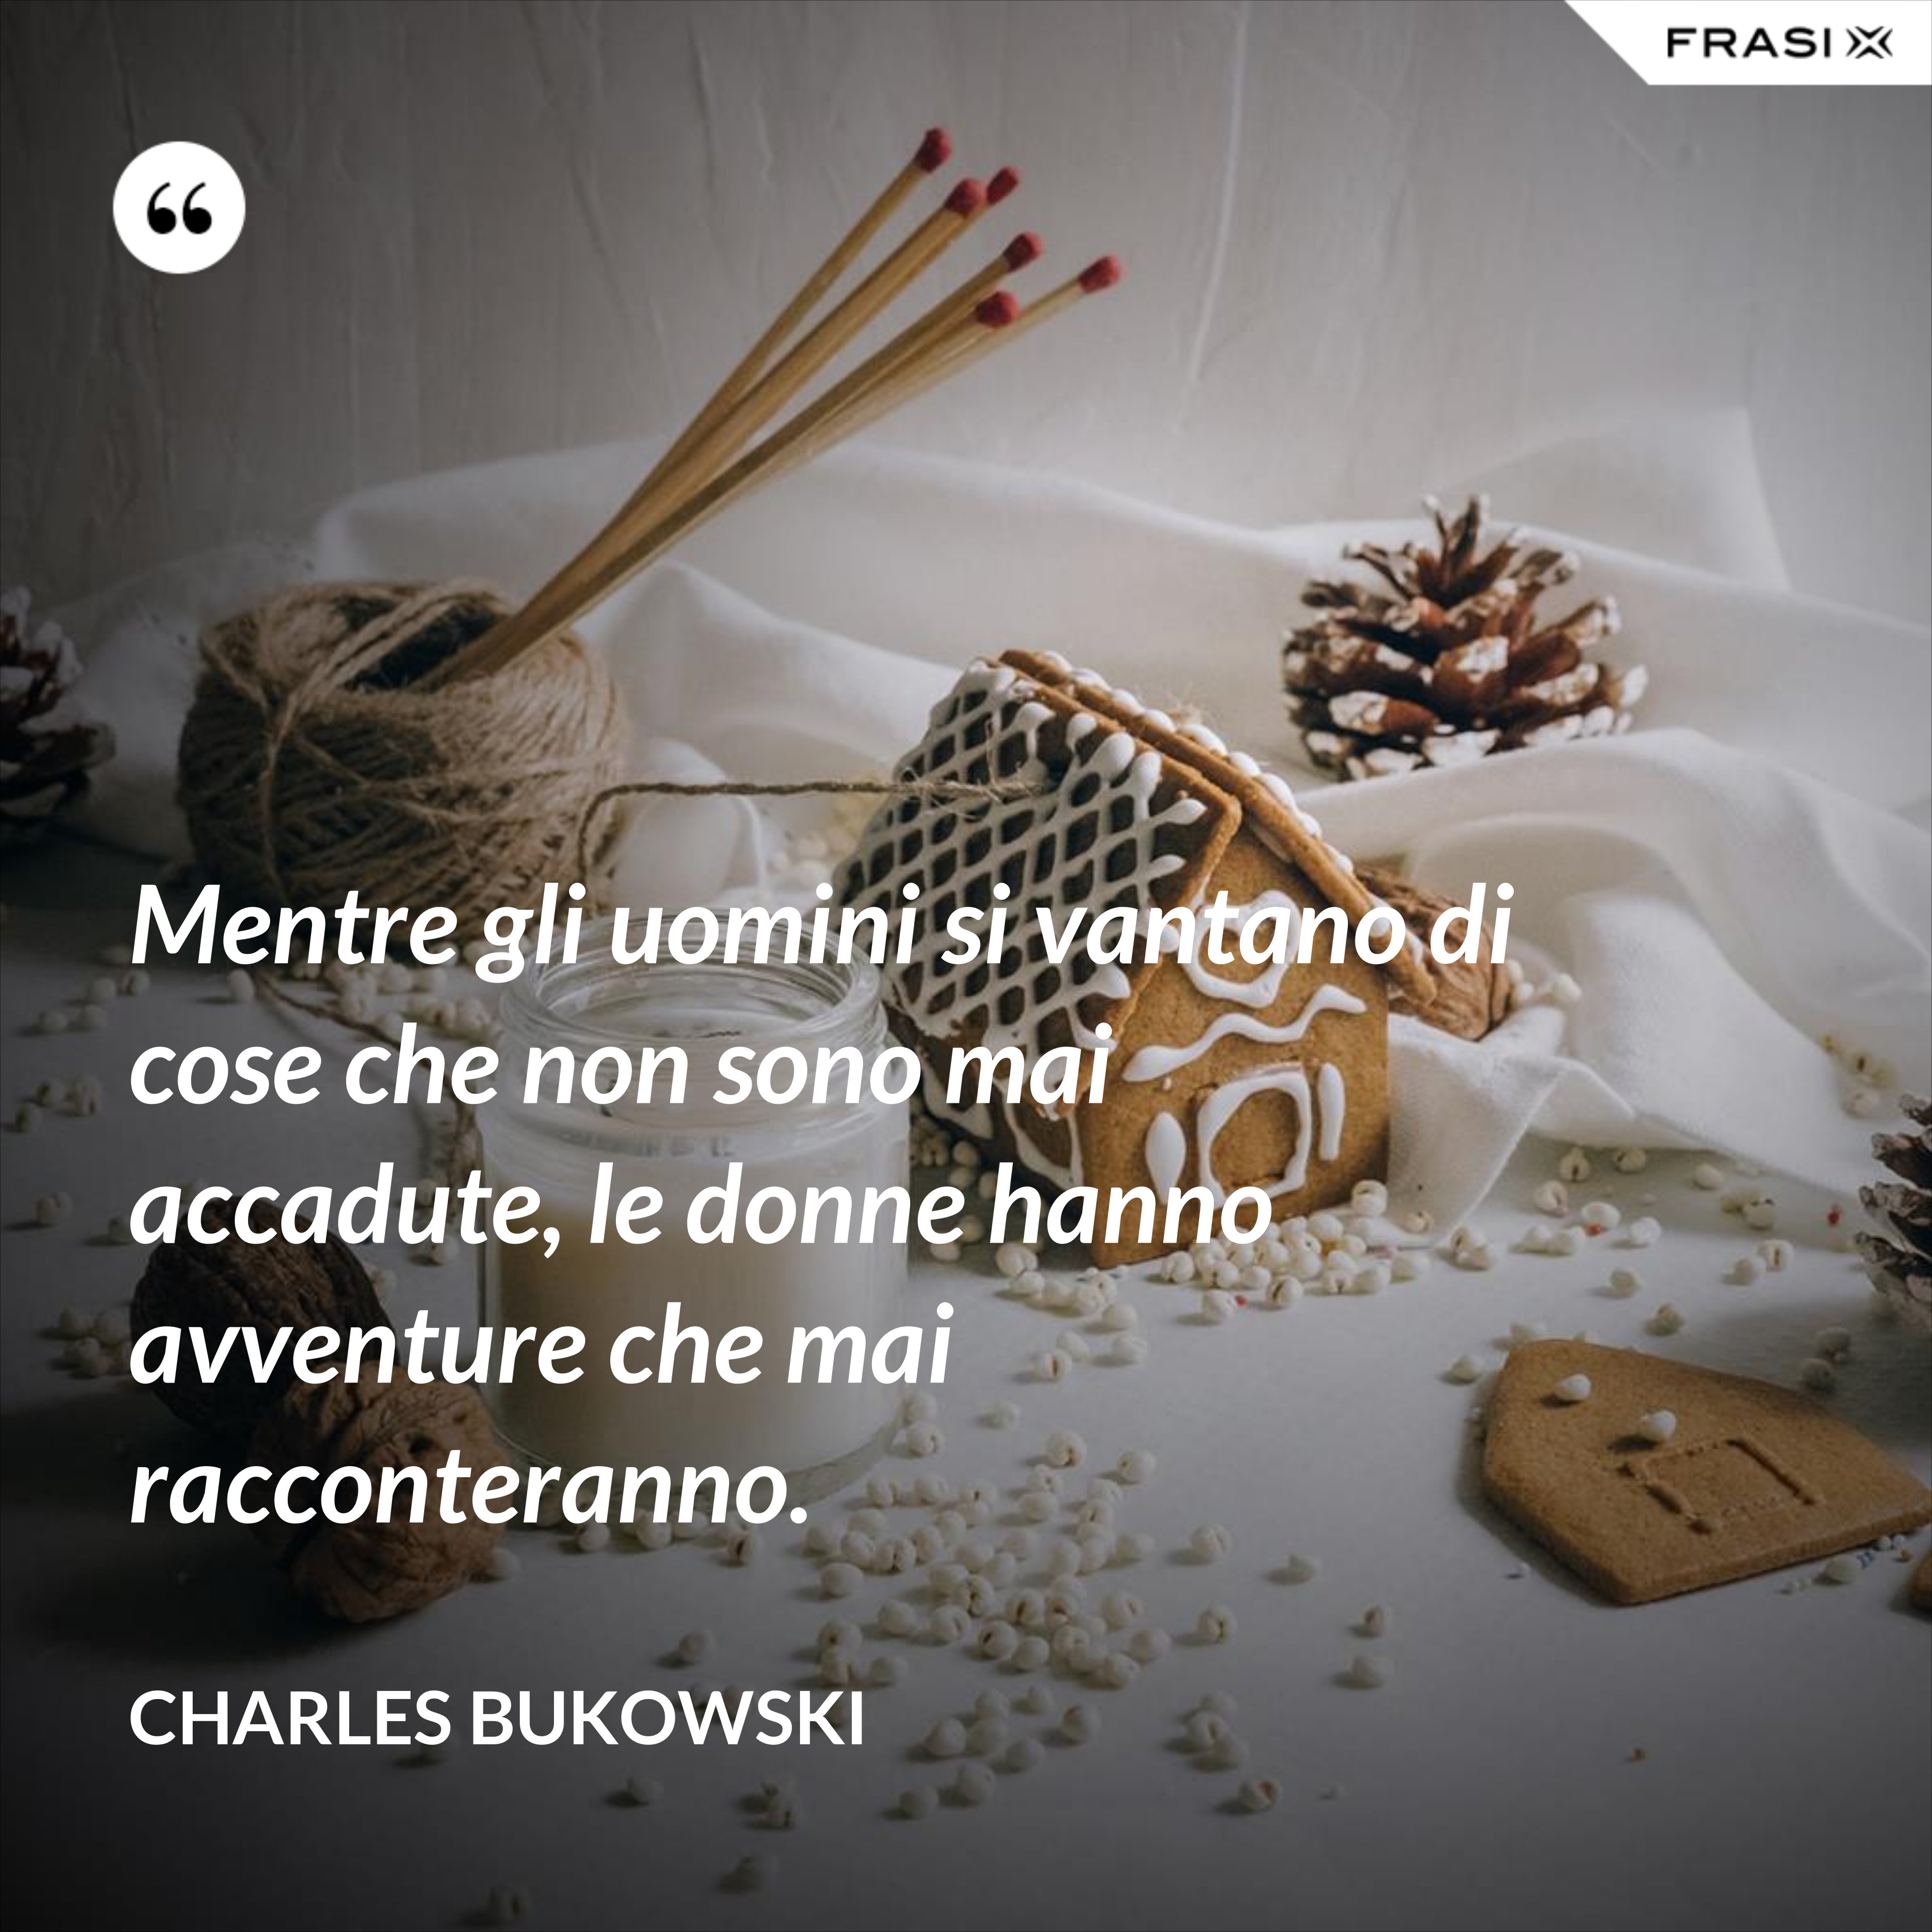 Mentre gli uomini si vantano di cose che non sono mai accadute, le donne hanno avventure che mai racconteranno. - Charles Bukowski